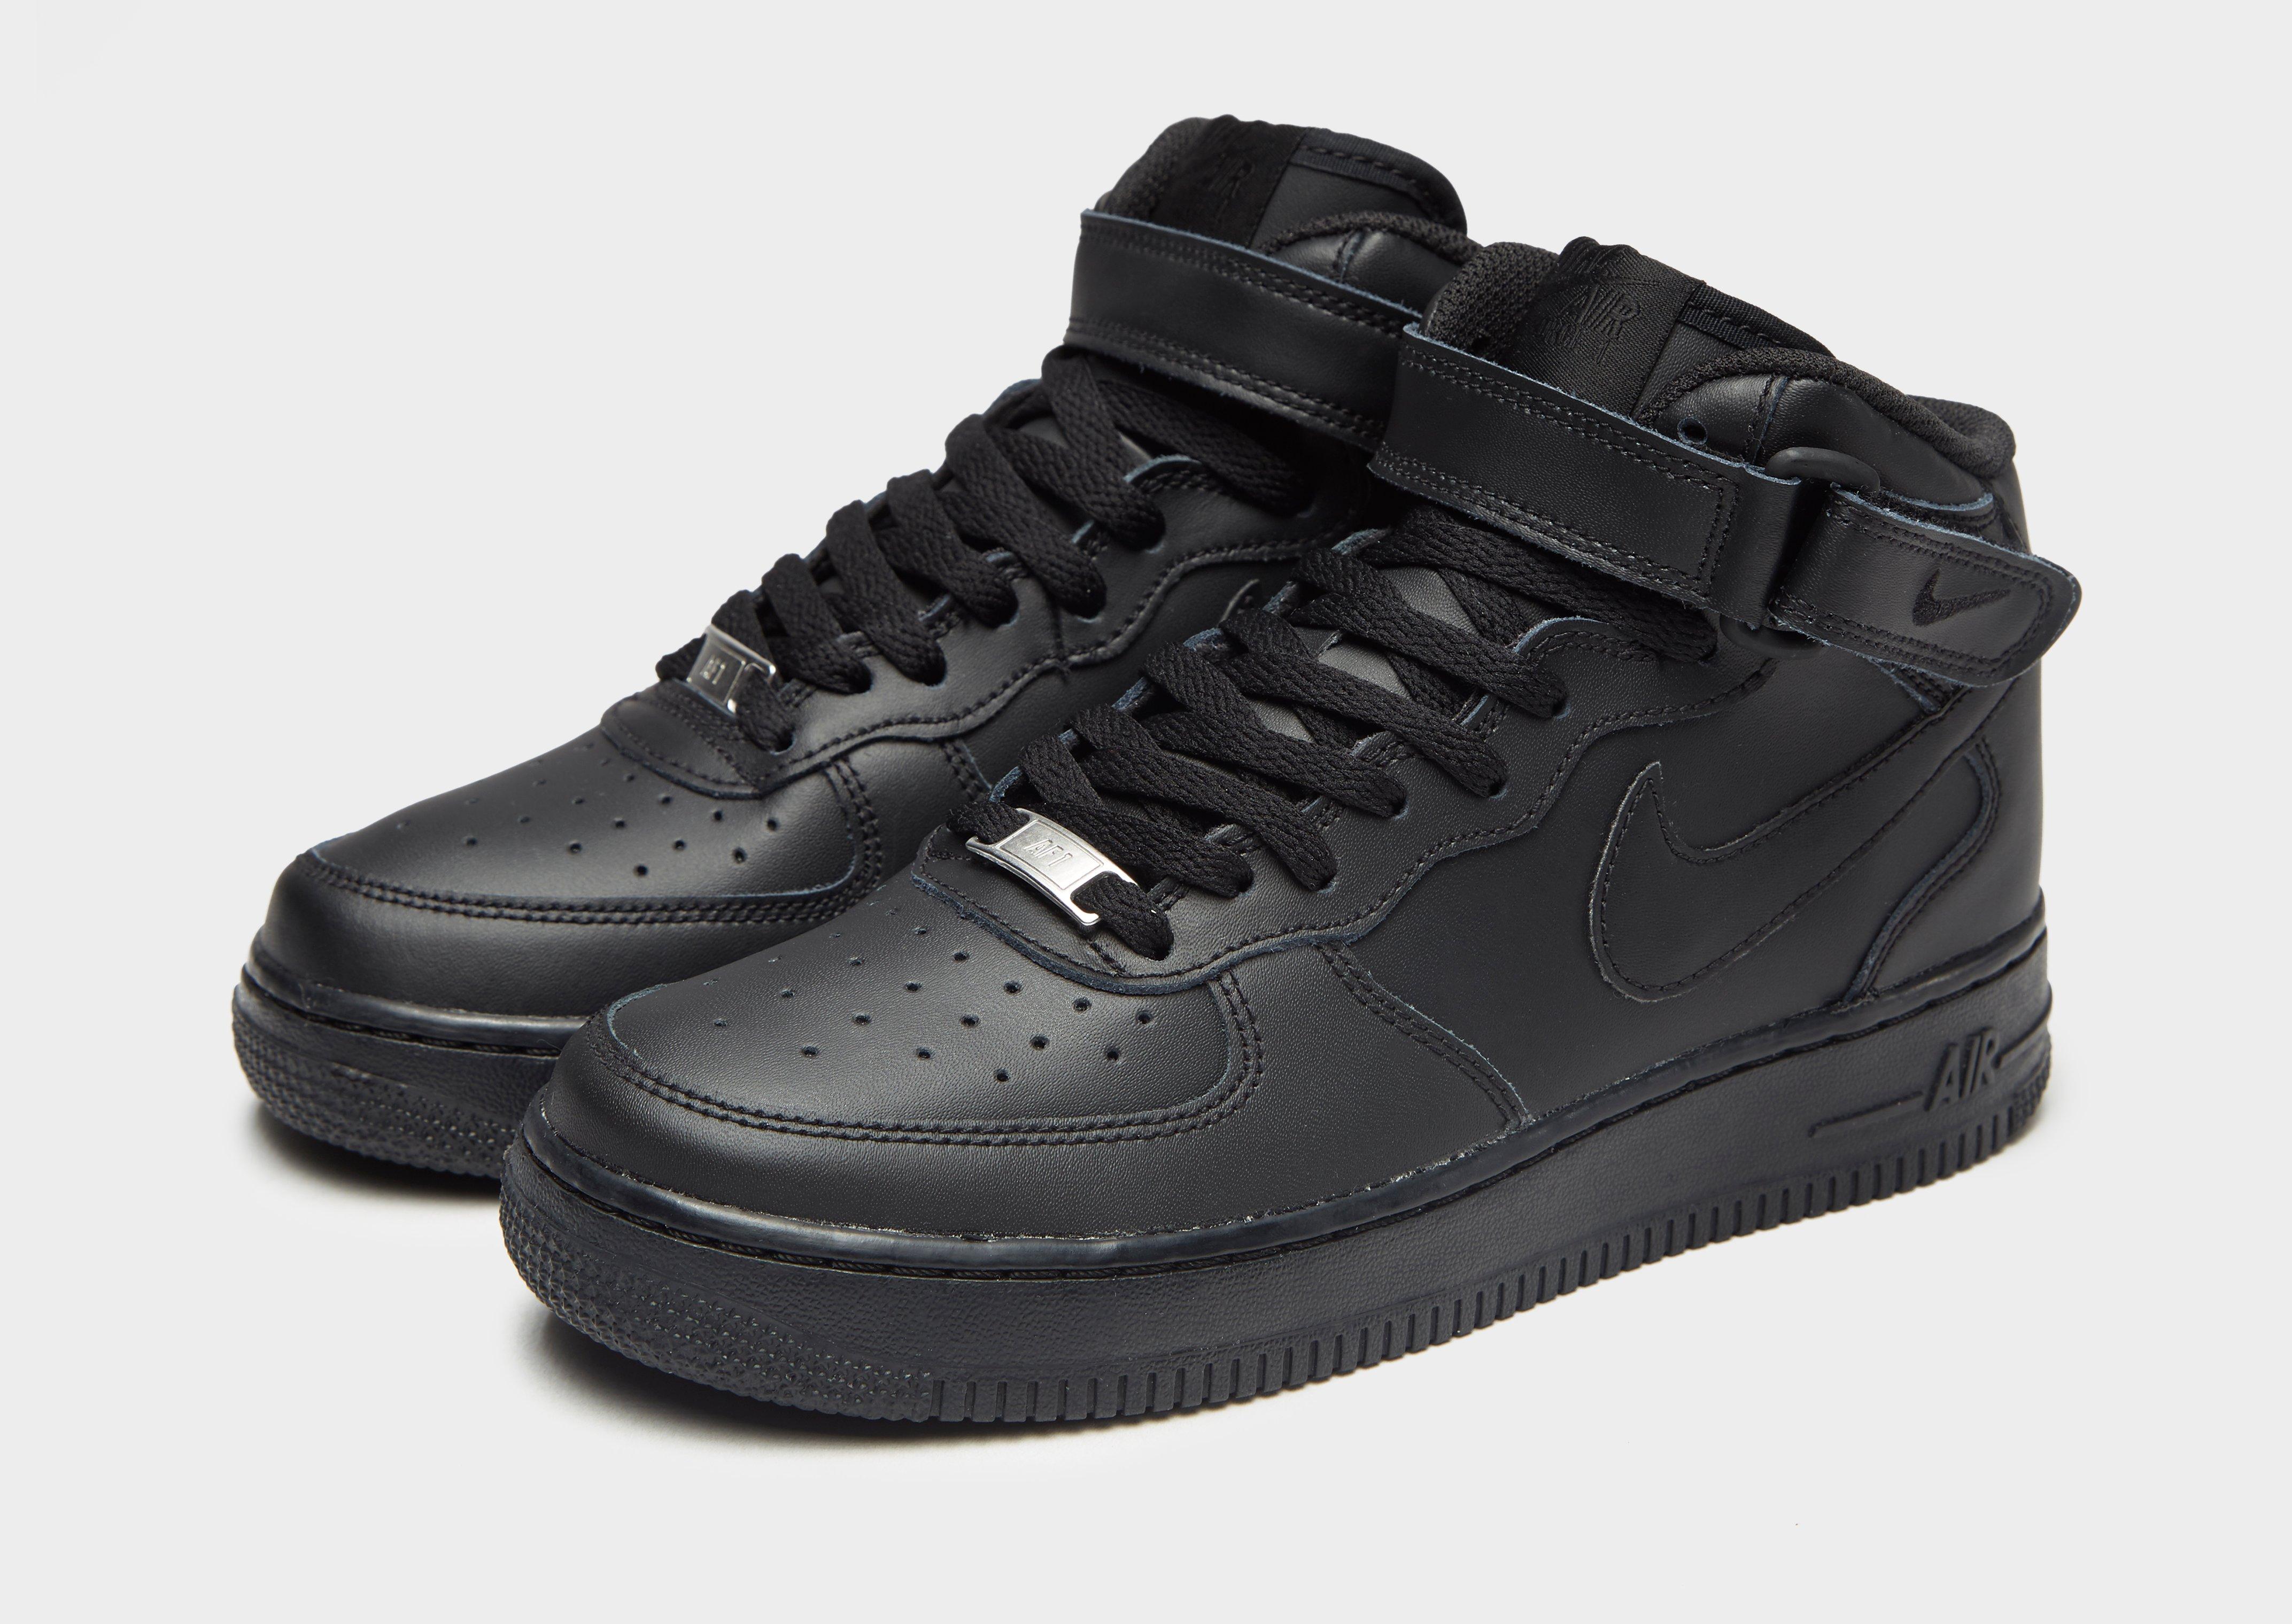 Nike Air Jordan 1 noir black taille 43 9.5 US 8.5 UK High montante noire